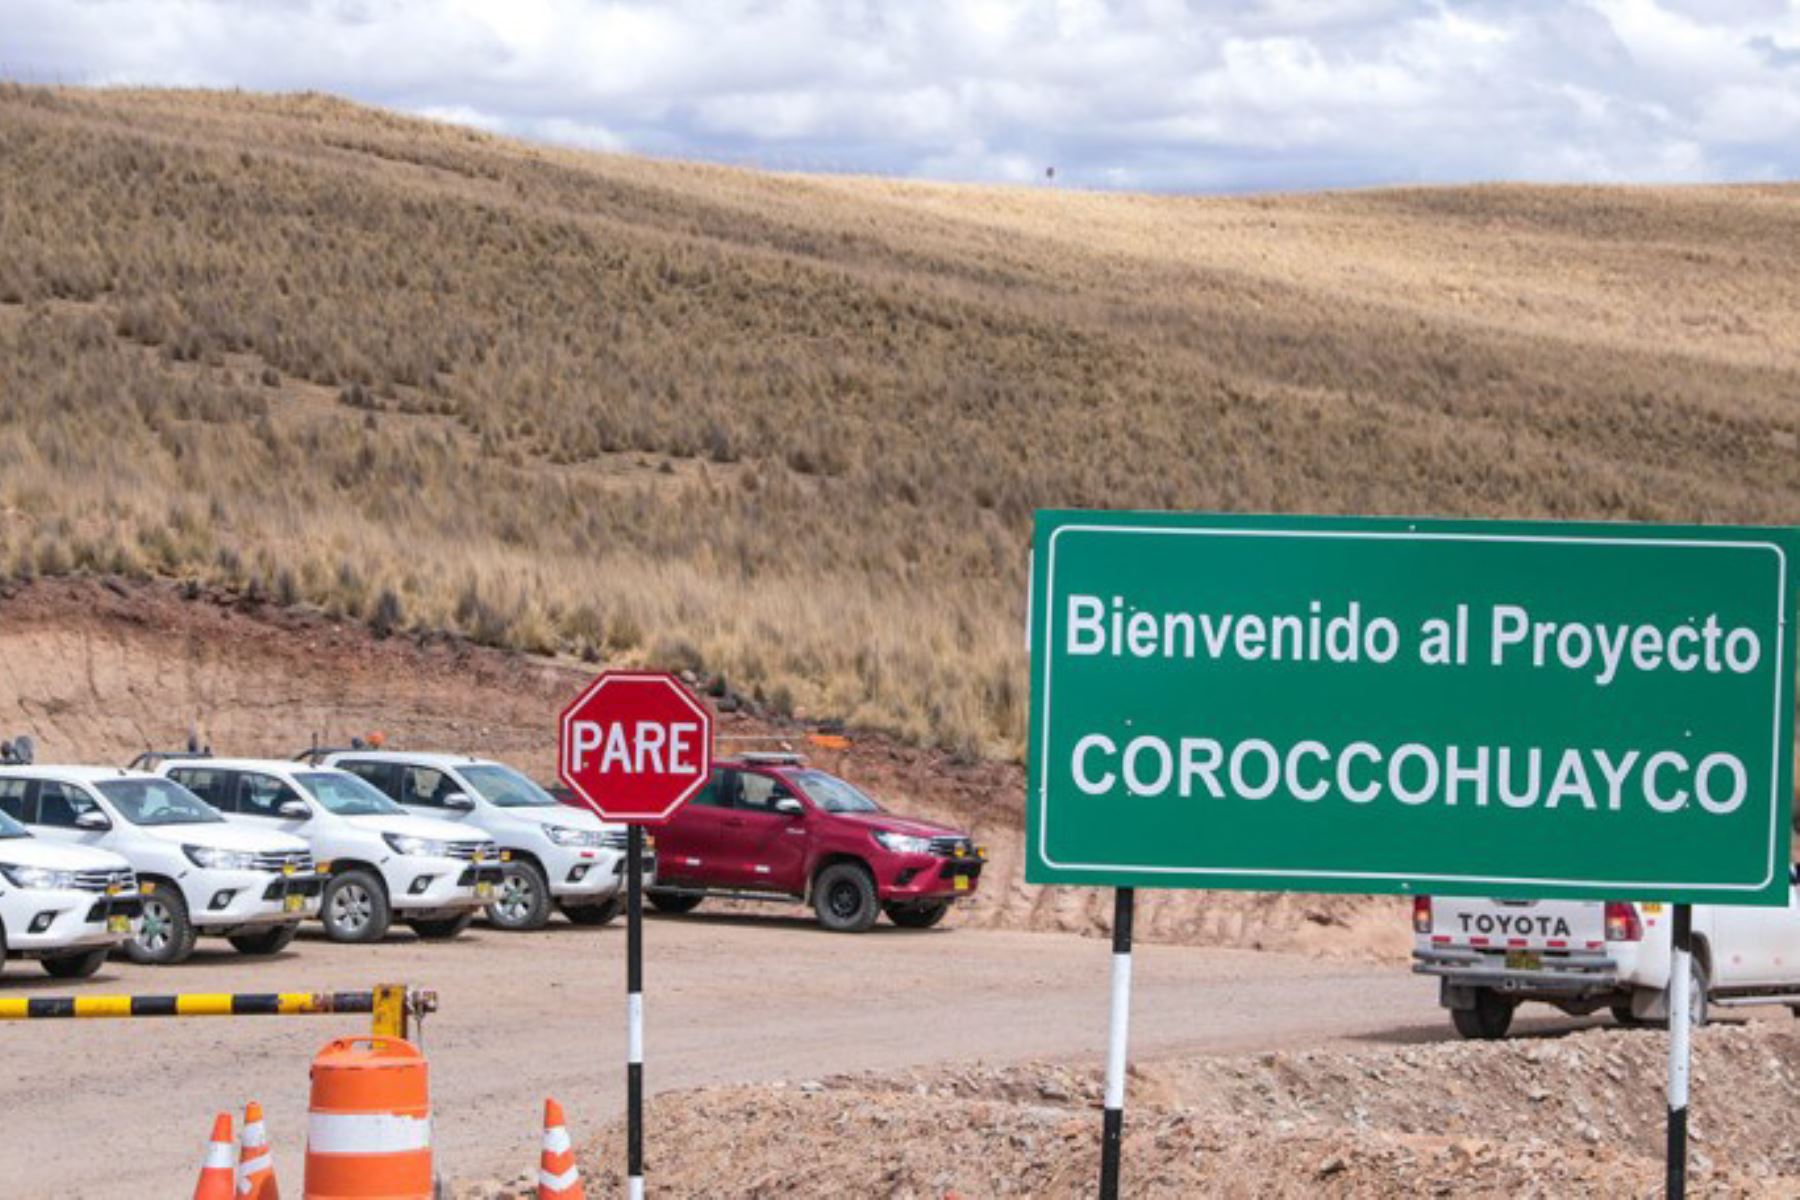 Minera Antapaccay descarta inicio de trabajos en proyecto Coroccohuayco en Espinar, Cusco, y asegura que esperará resultado de la consulta previa.